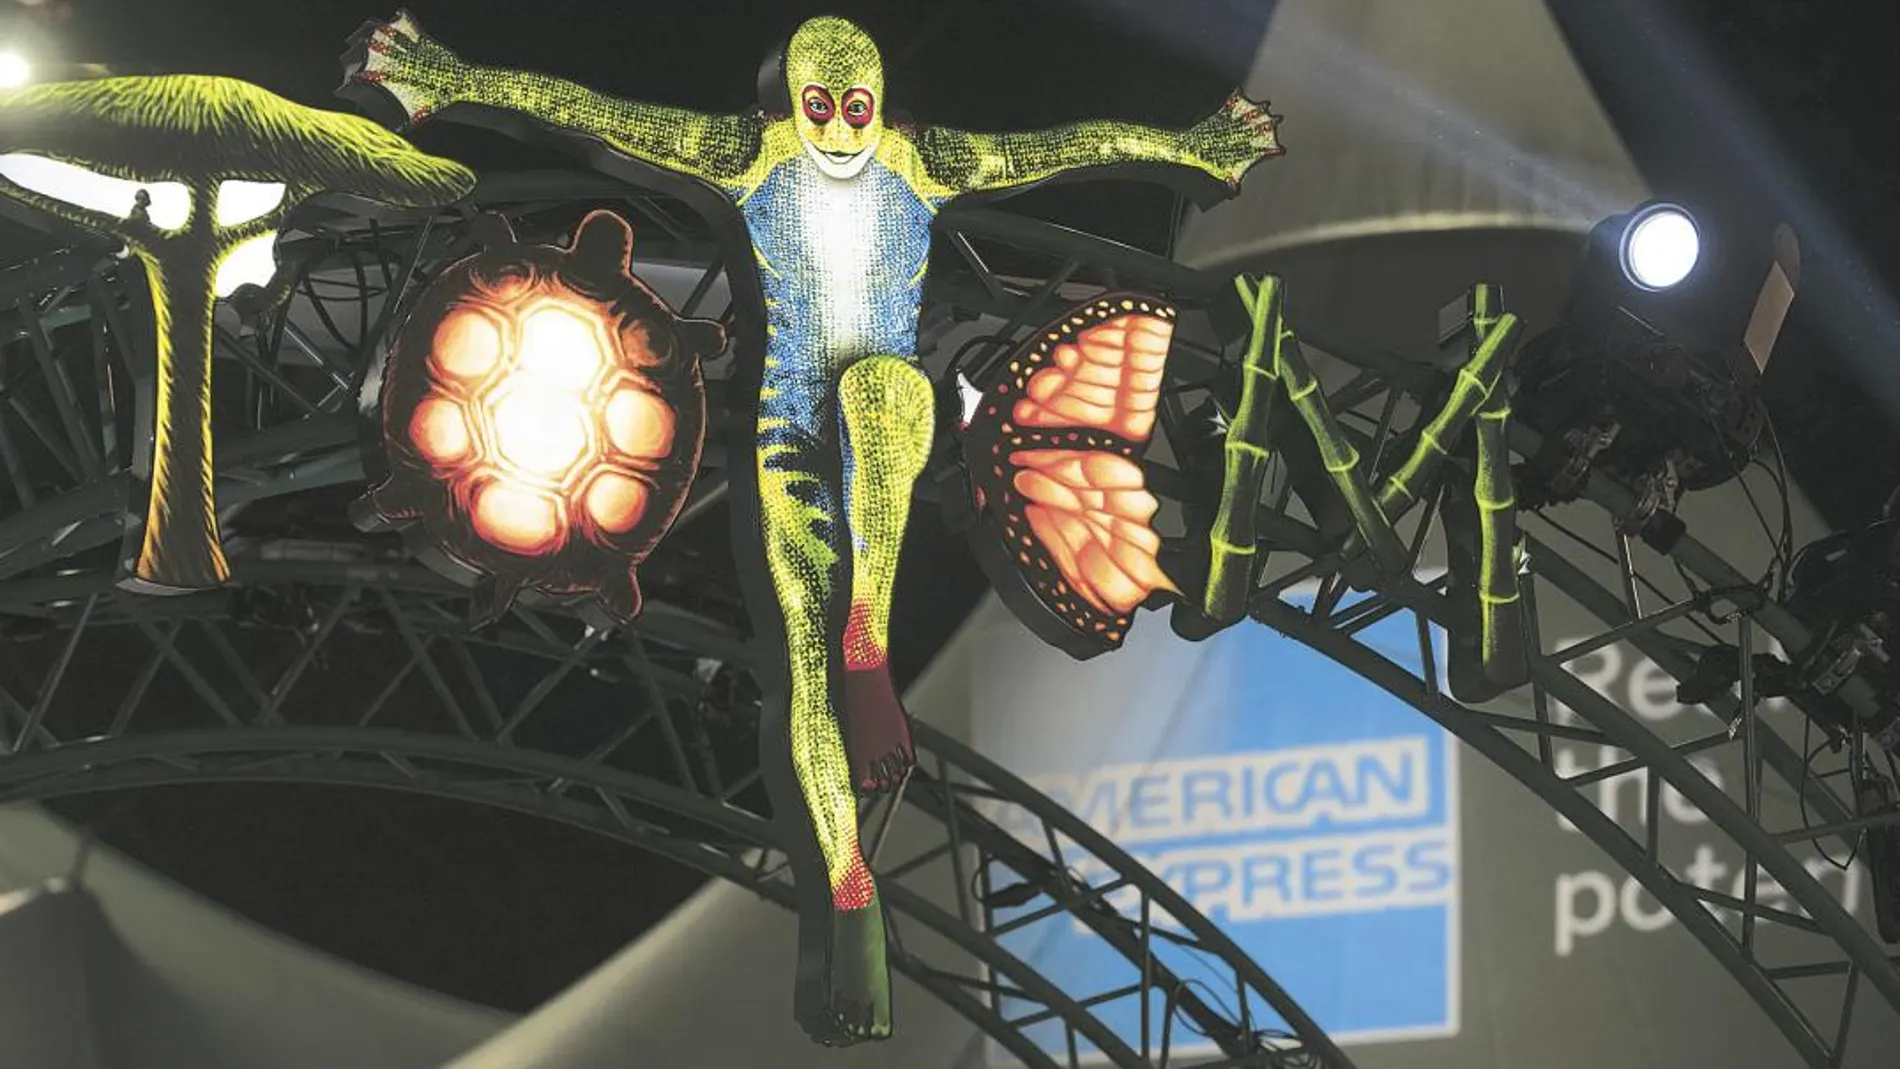 Miles de clientes de American Express fueron premiados por la compañía con una función del Cirque du Soleil por recomendar sus tarjetas